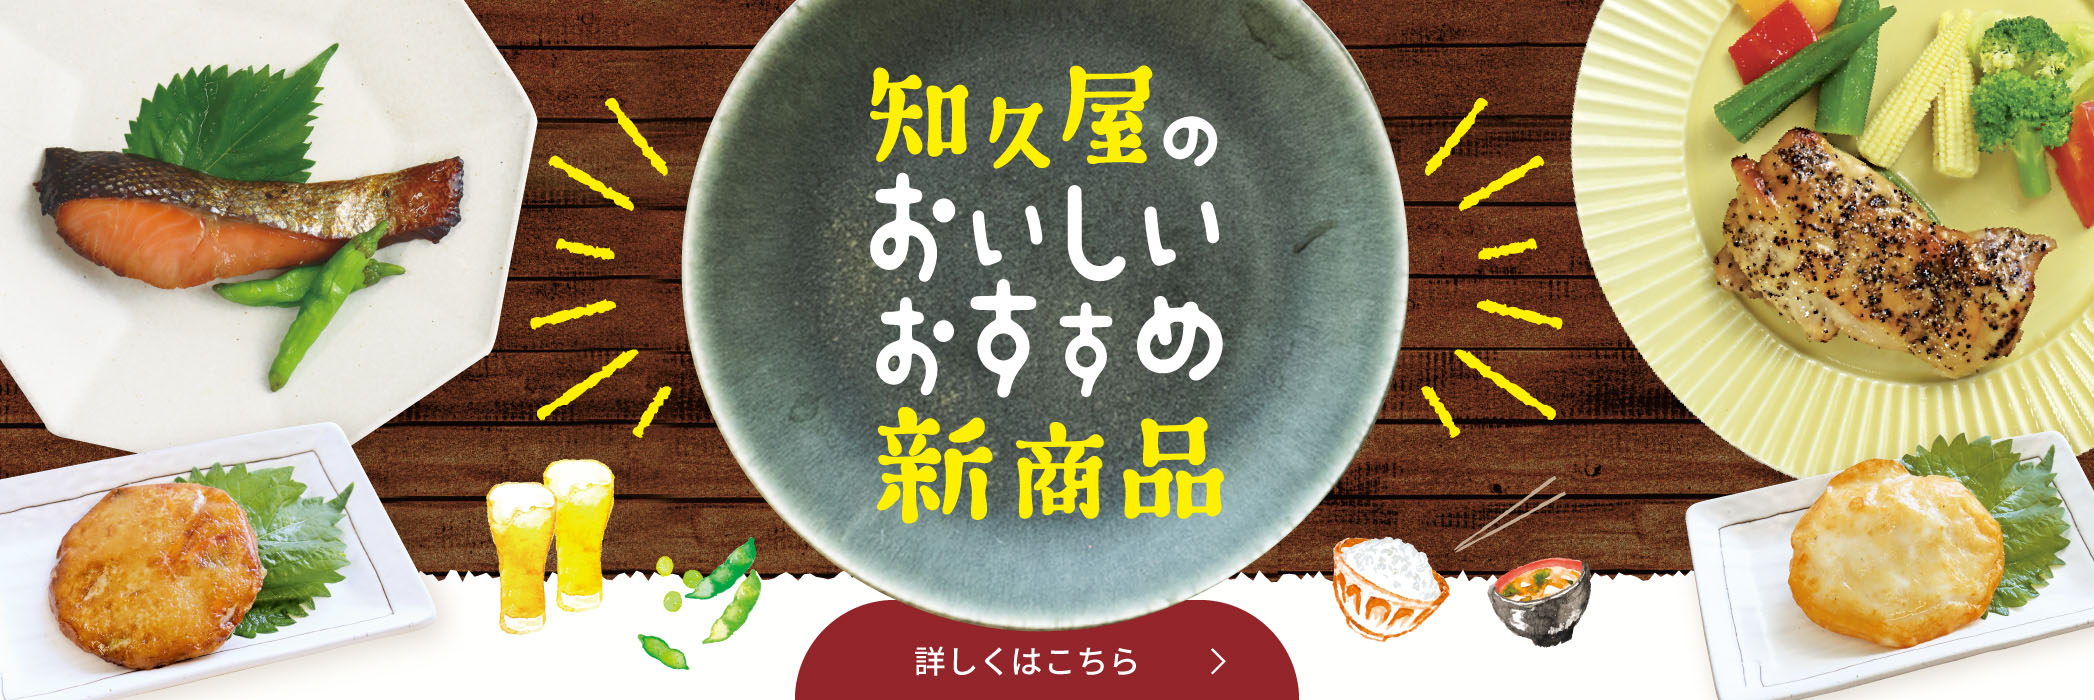 健康惣菜・弁当の知久屋(ちくや)-公式 オンラインストアこだわりお惣菜の通販